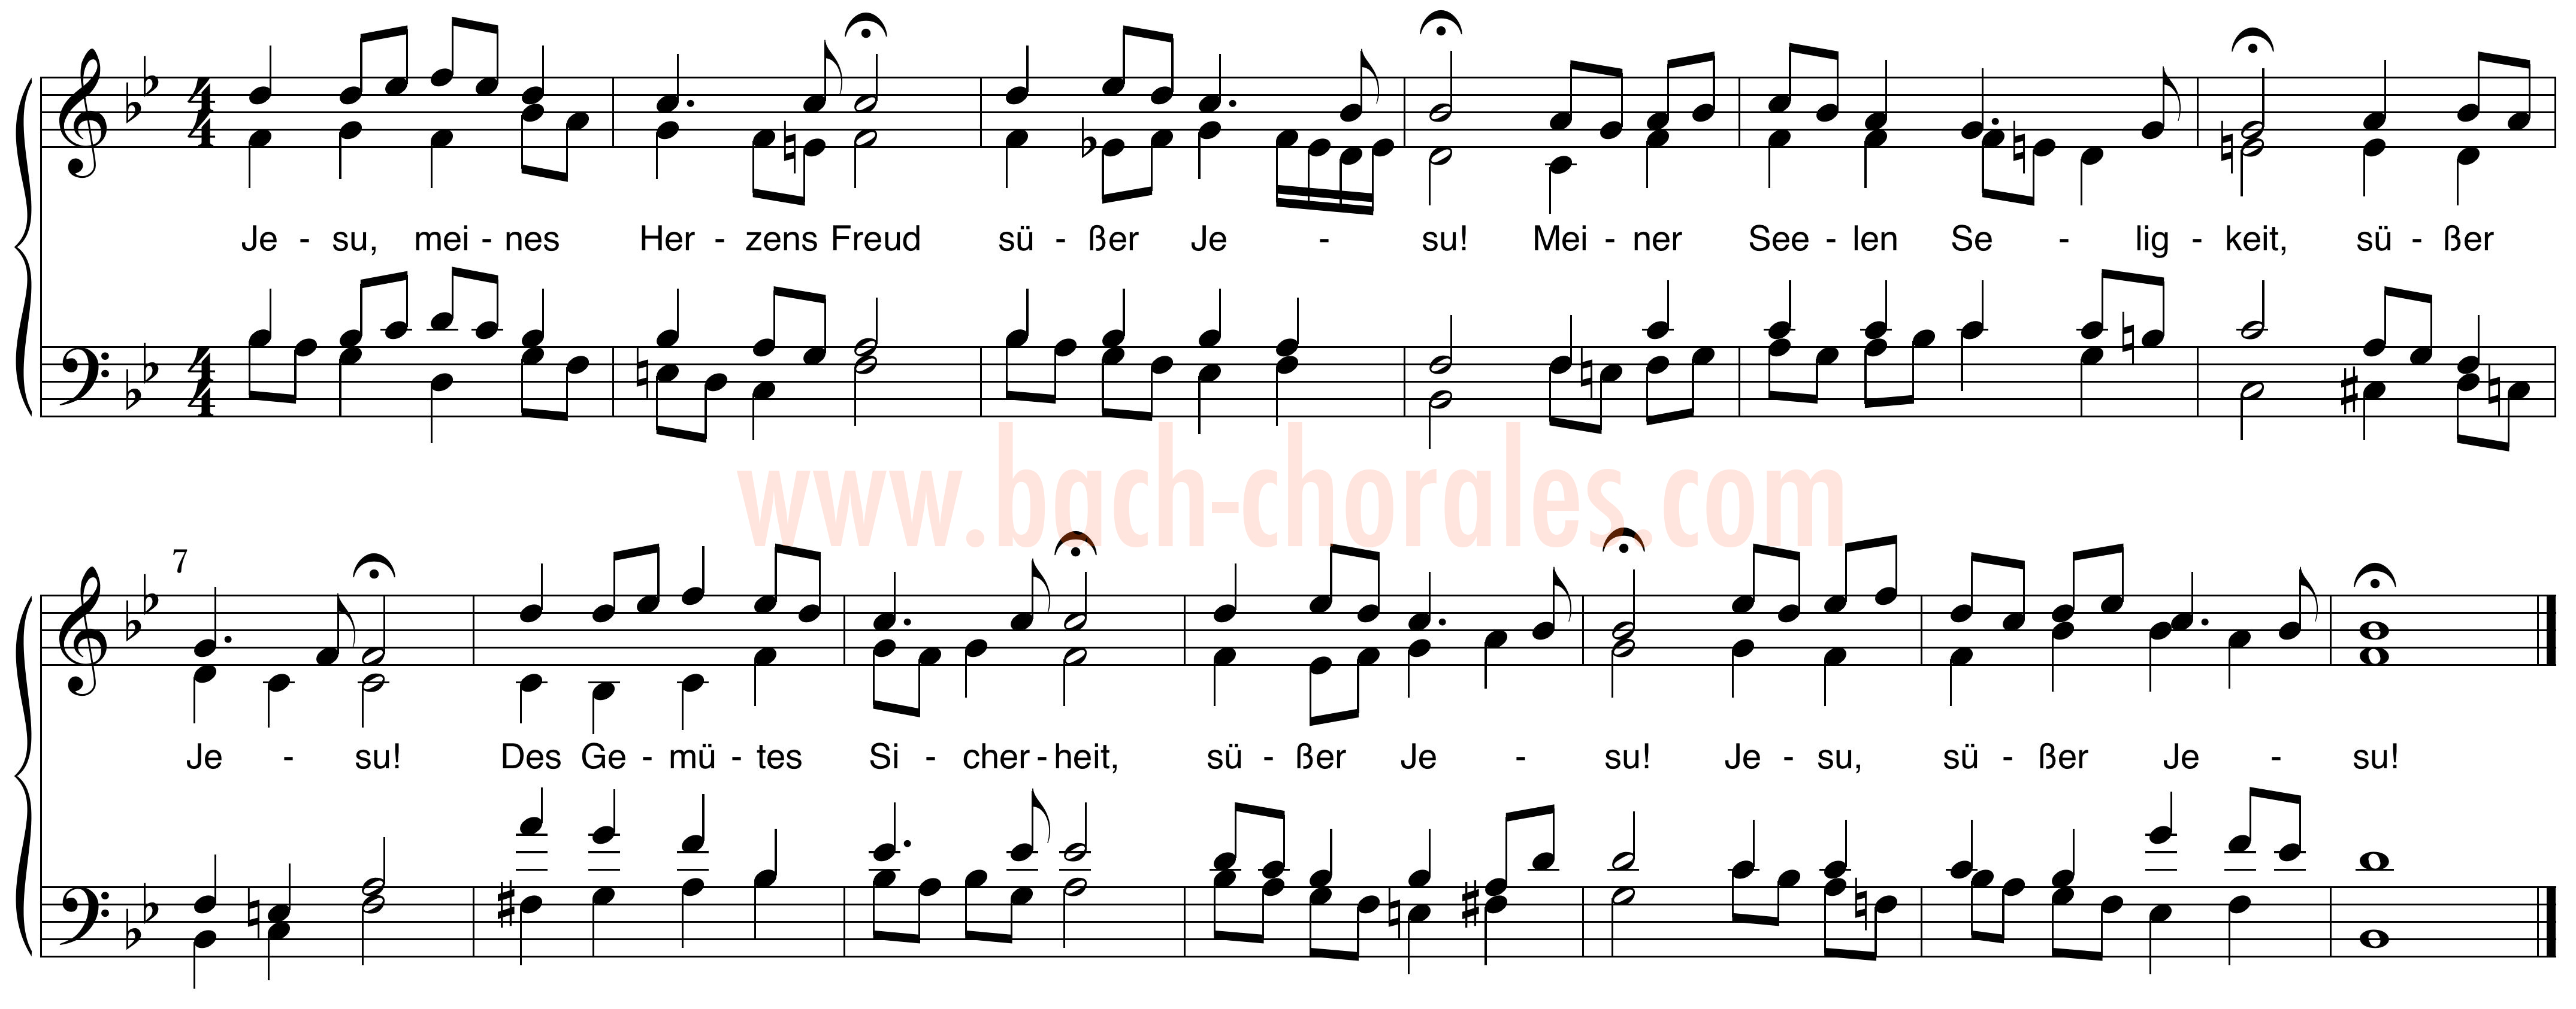 notenbeeld BWV 361 op https://www.bach-chorales.com/